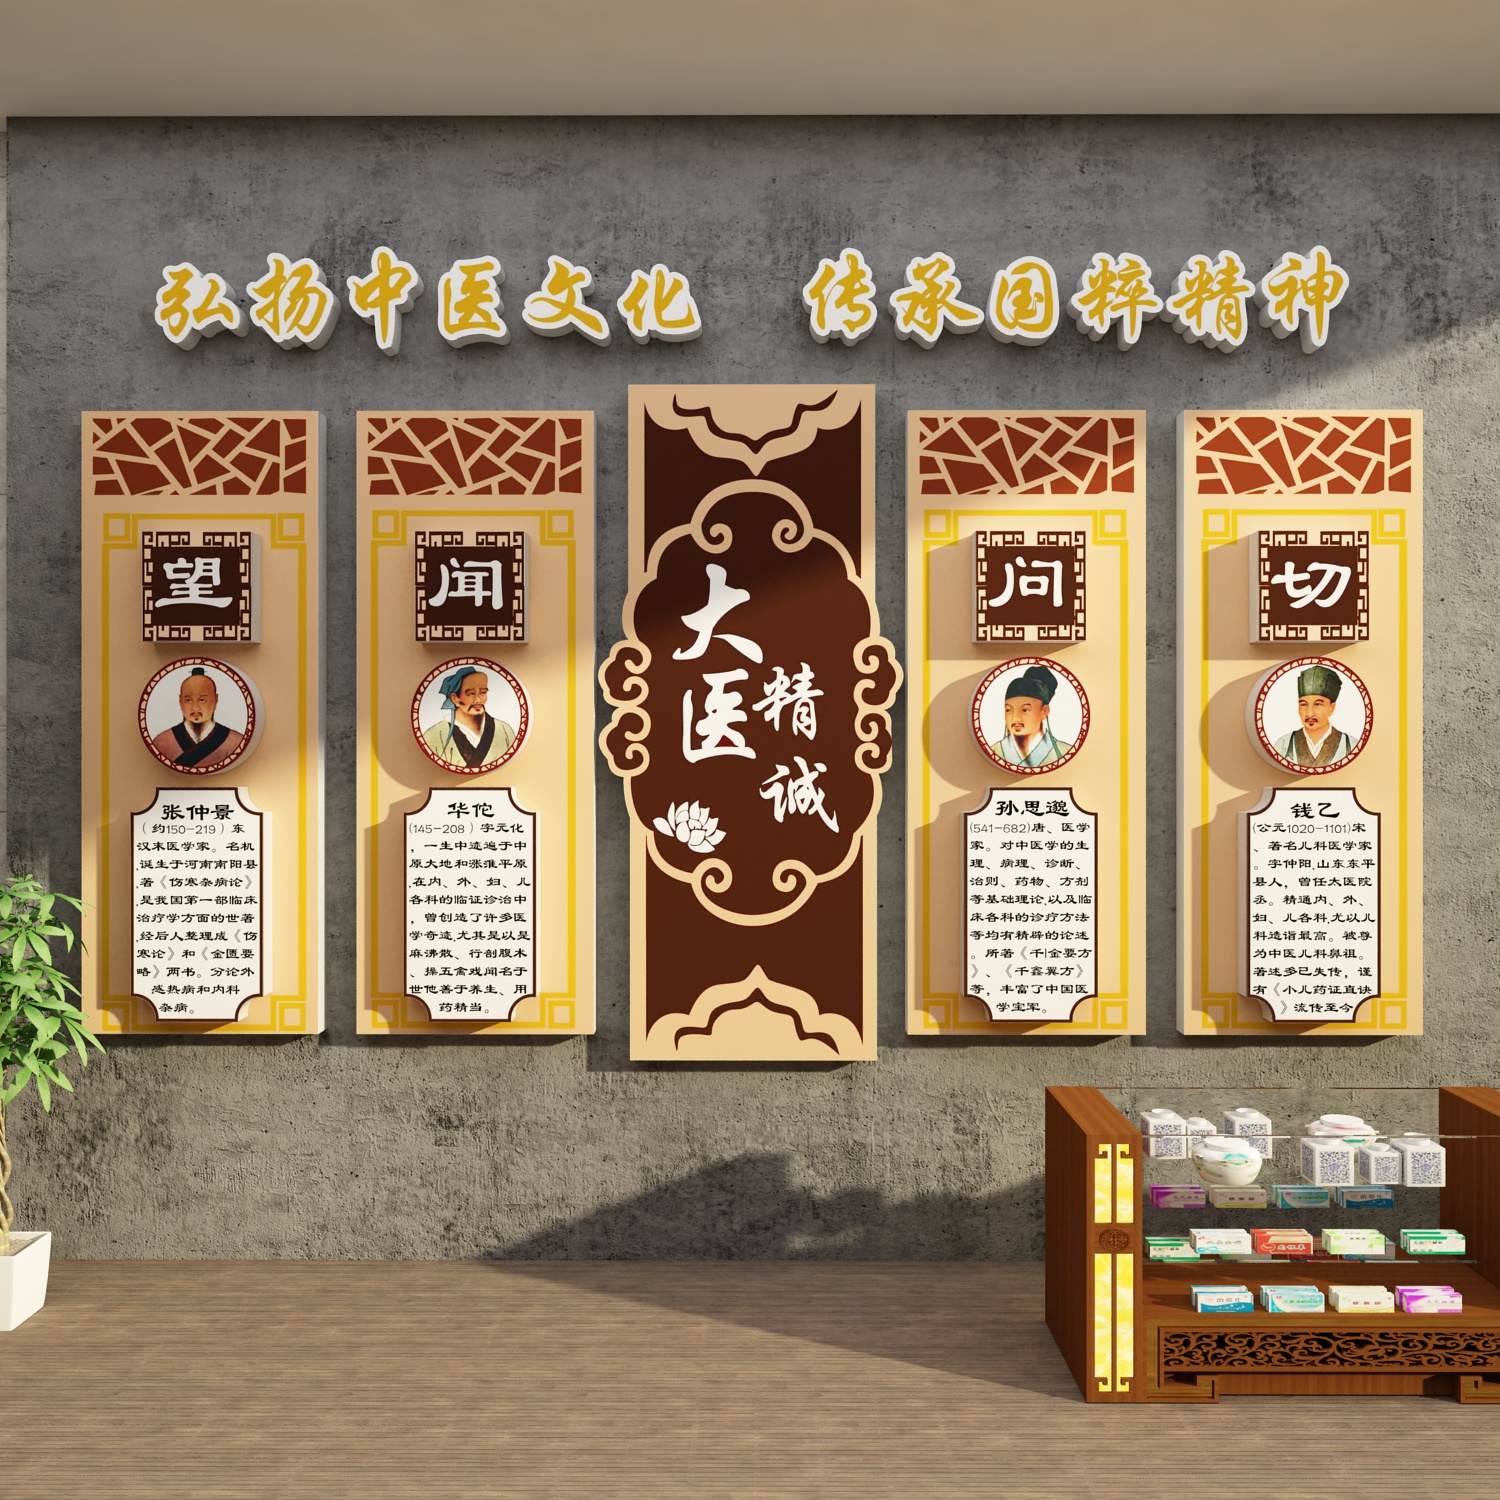 中医阁理疗养生馆文化墙面装修饰画四季设计背景形象墙壁宣传挂画